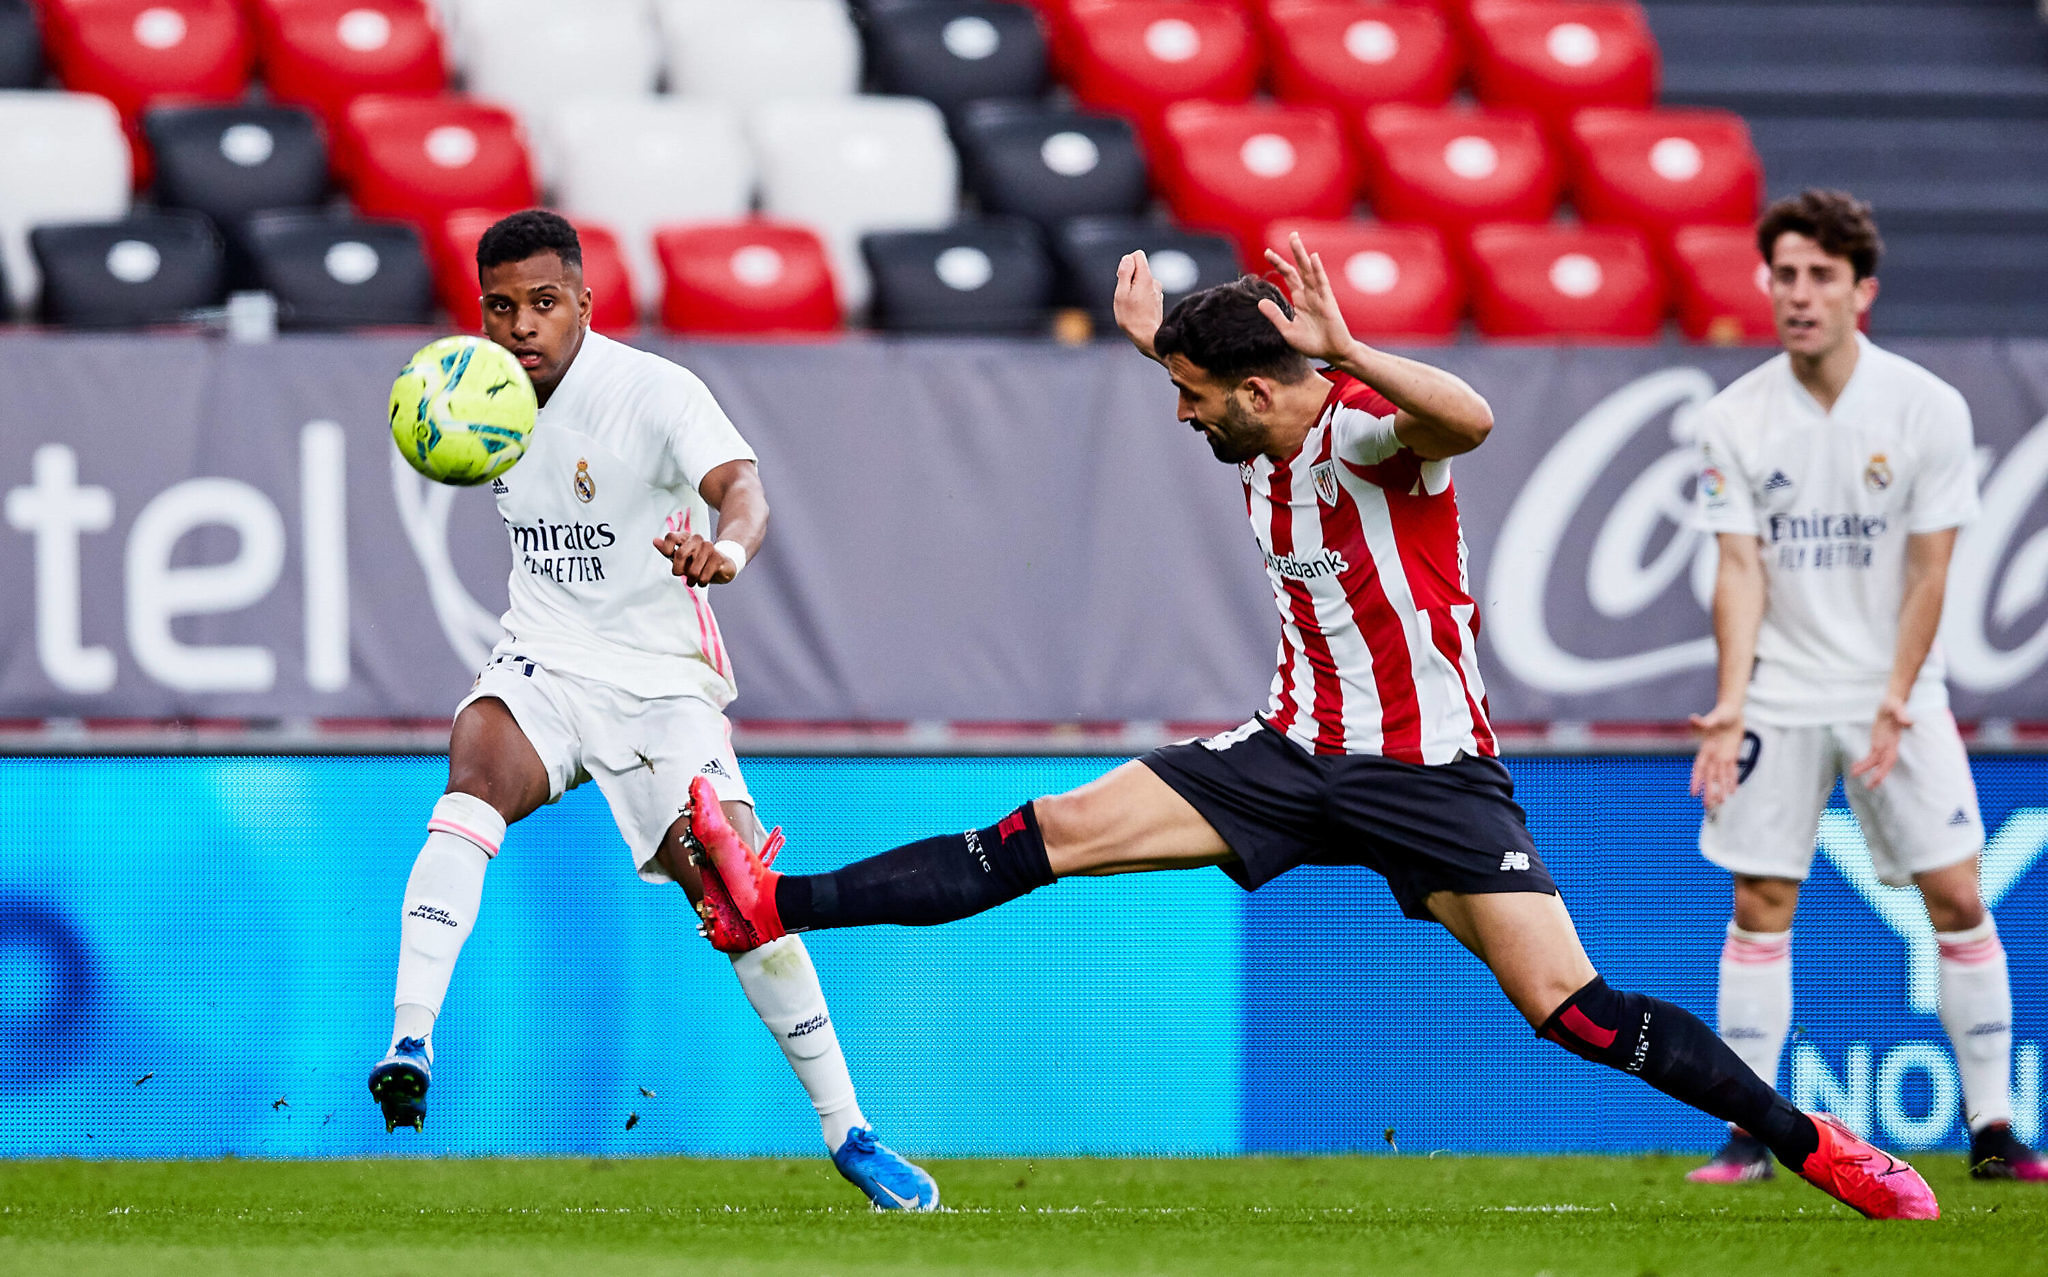 Calificaciones Blancas | Athletic Club de Bilbao 0-1 Real Madrid